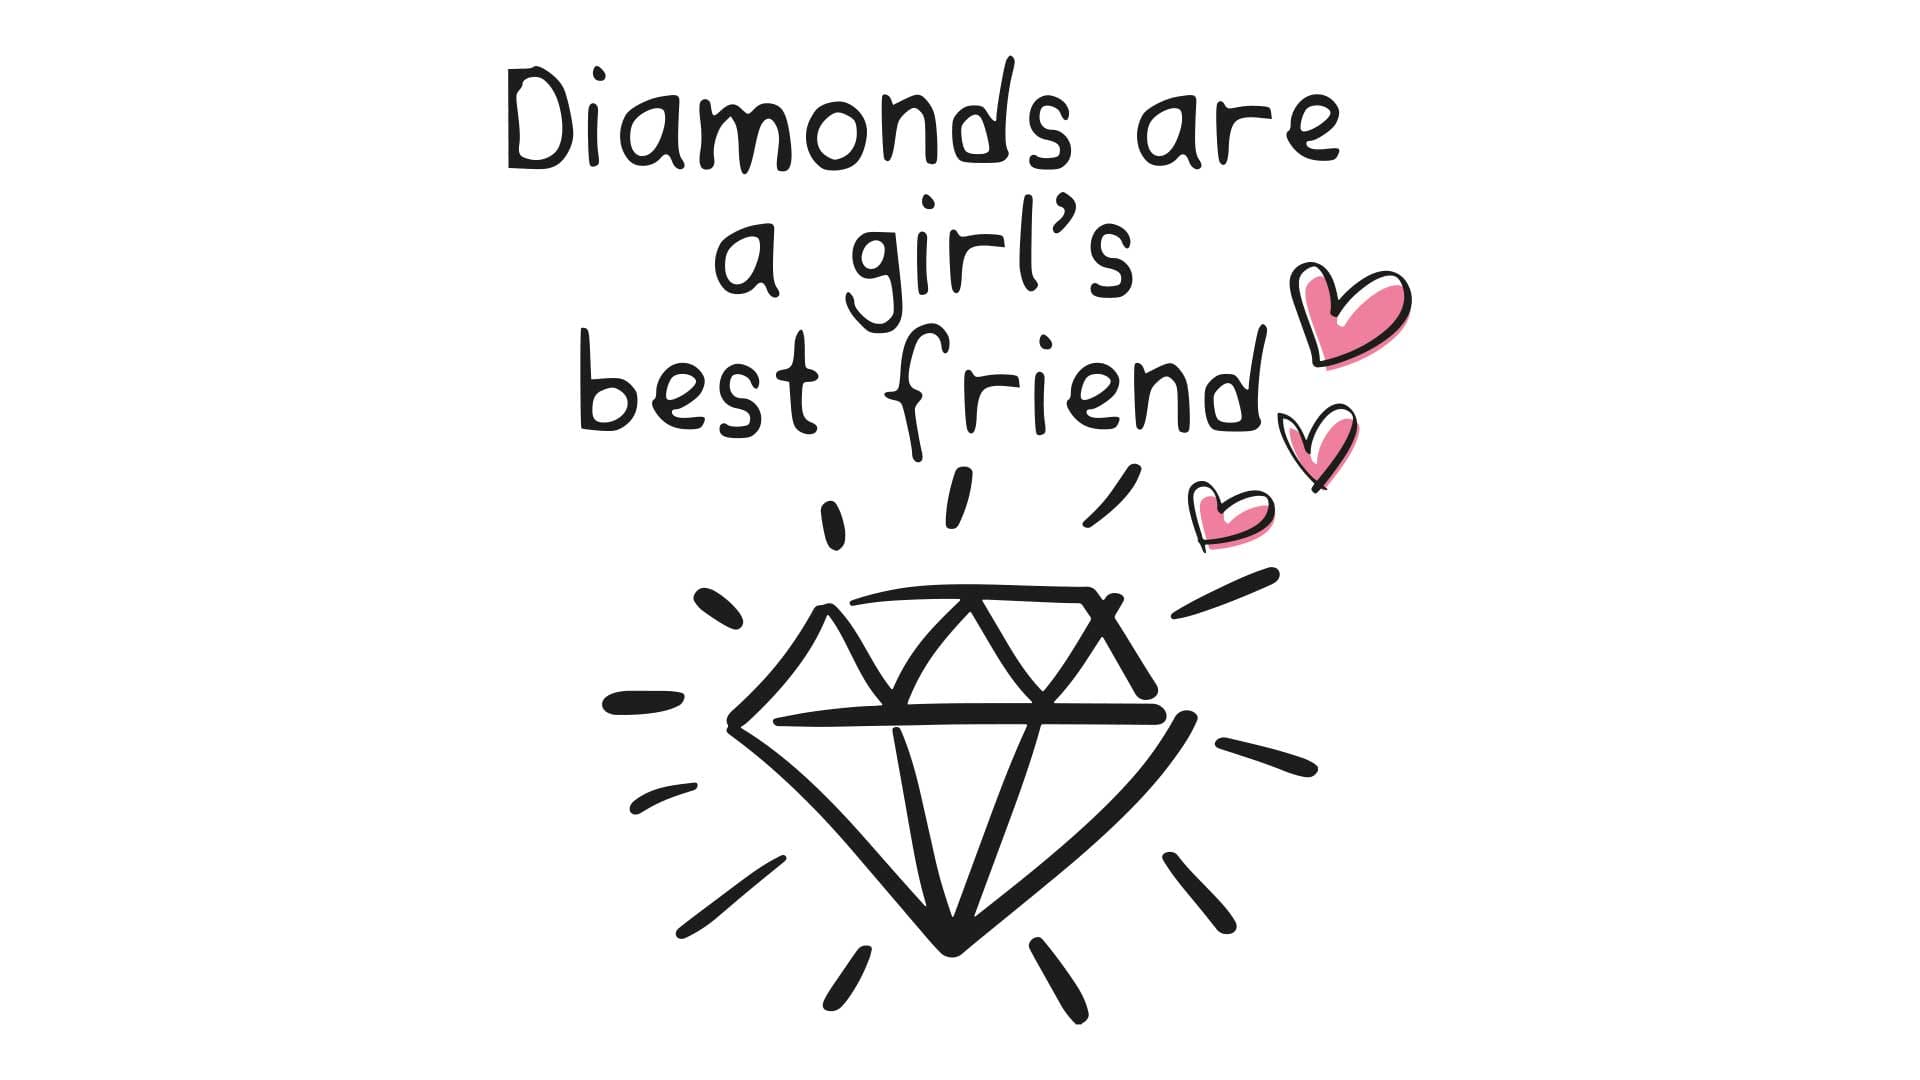 Les diamants sont les meilleurs amis des femmes